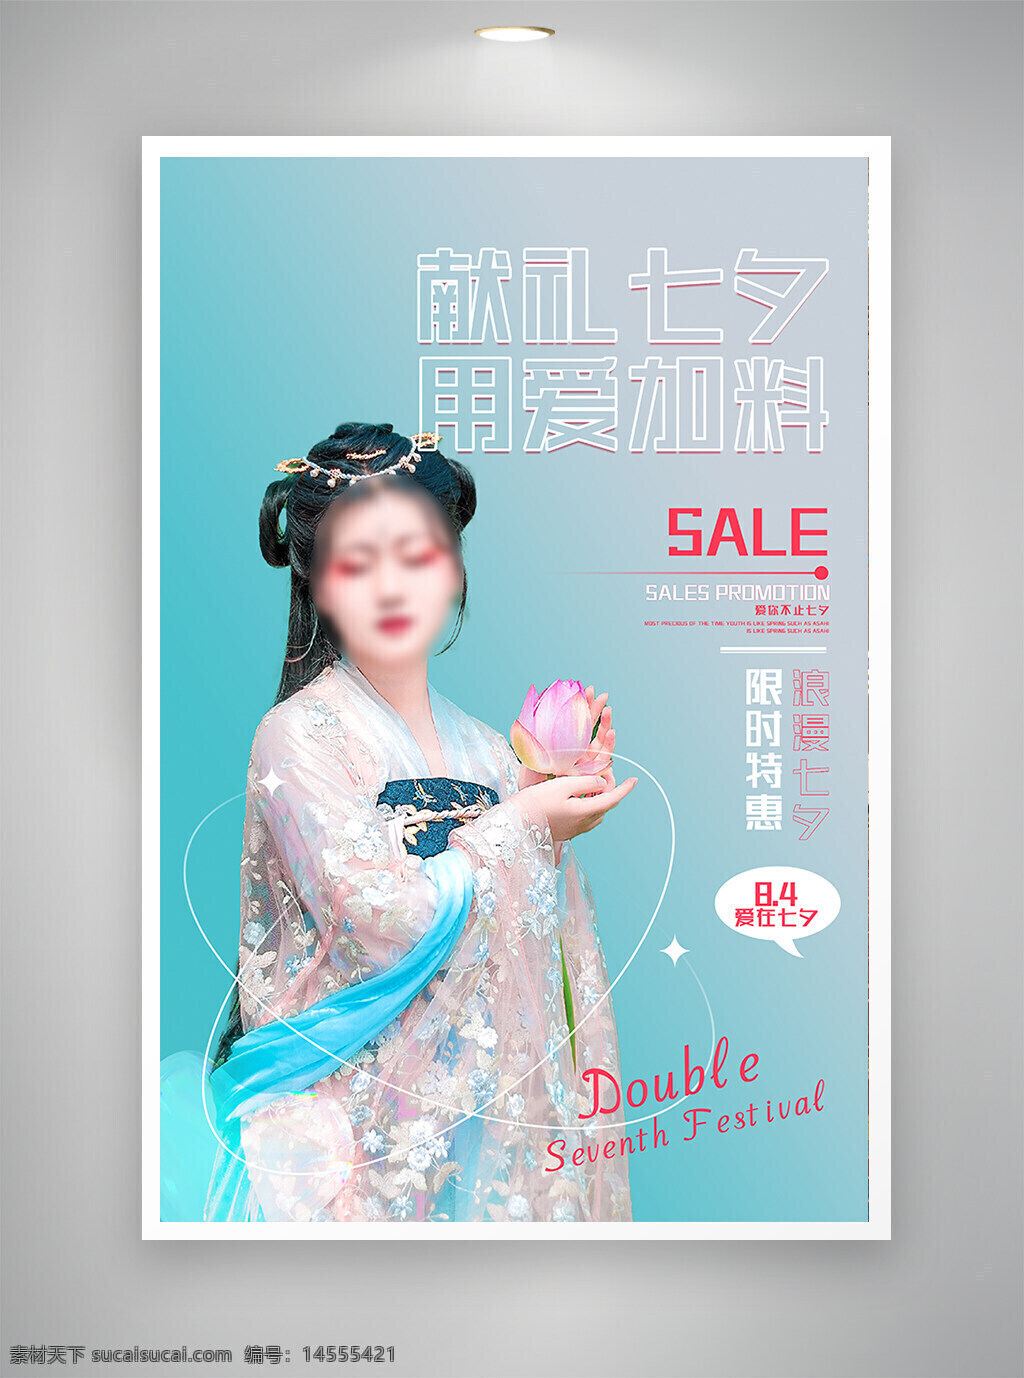 中国风海报 促销海报 古风海报 节日海报 七夕海报